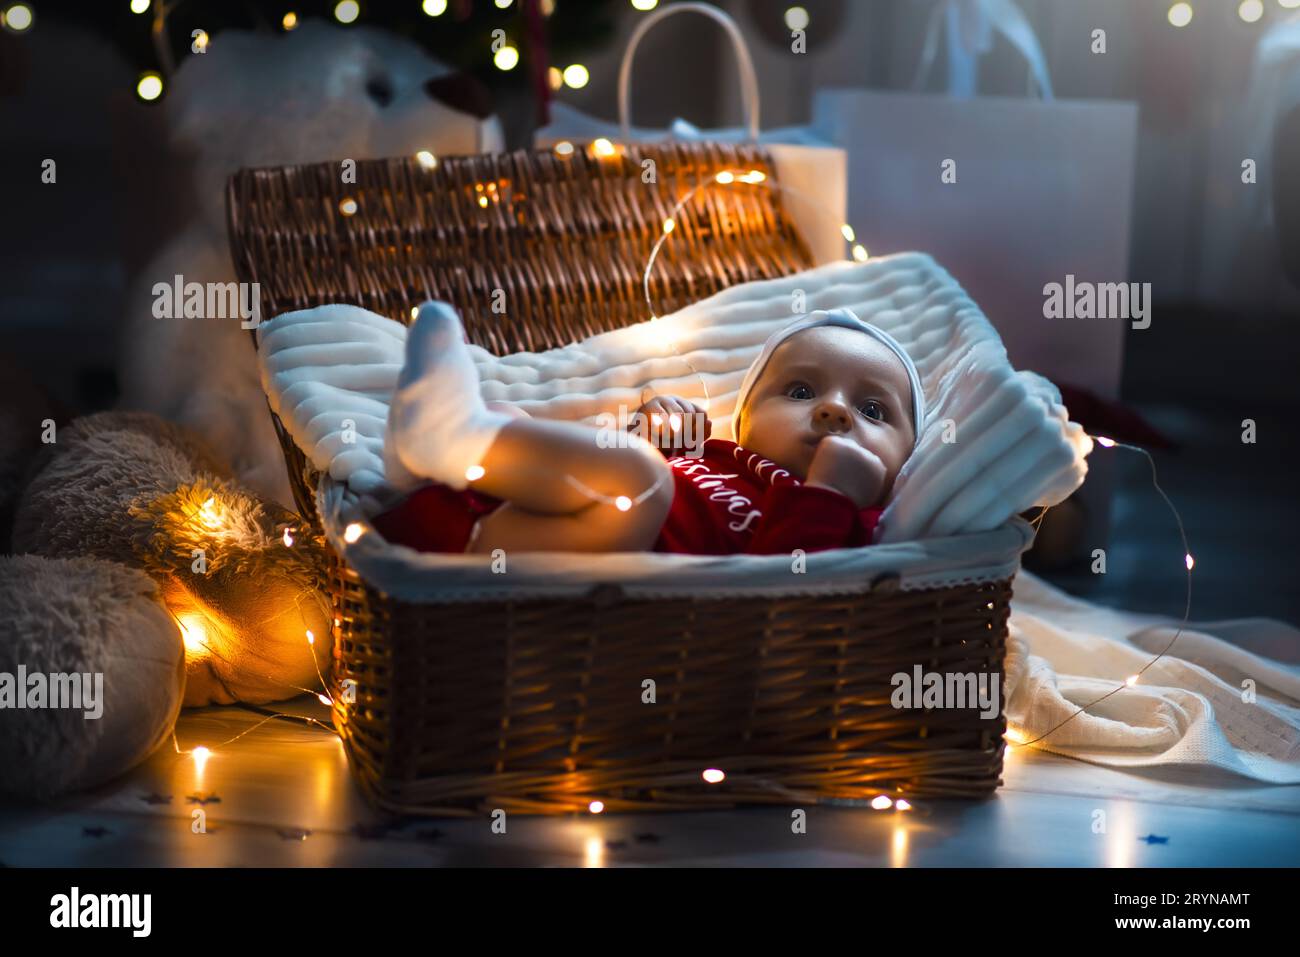 Kleine Rutschbaby mit weihnachtskleidung in Korb weihnachtsdekoration und Blitzlicht um sie herum. Stockfoto